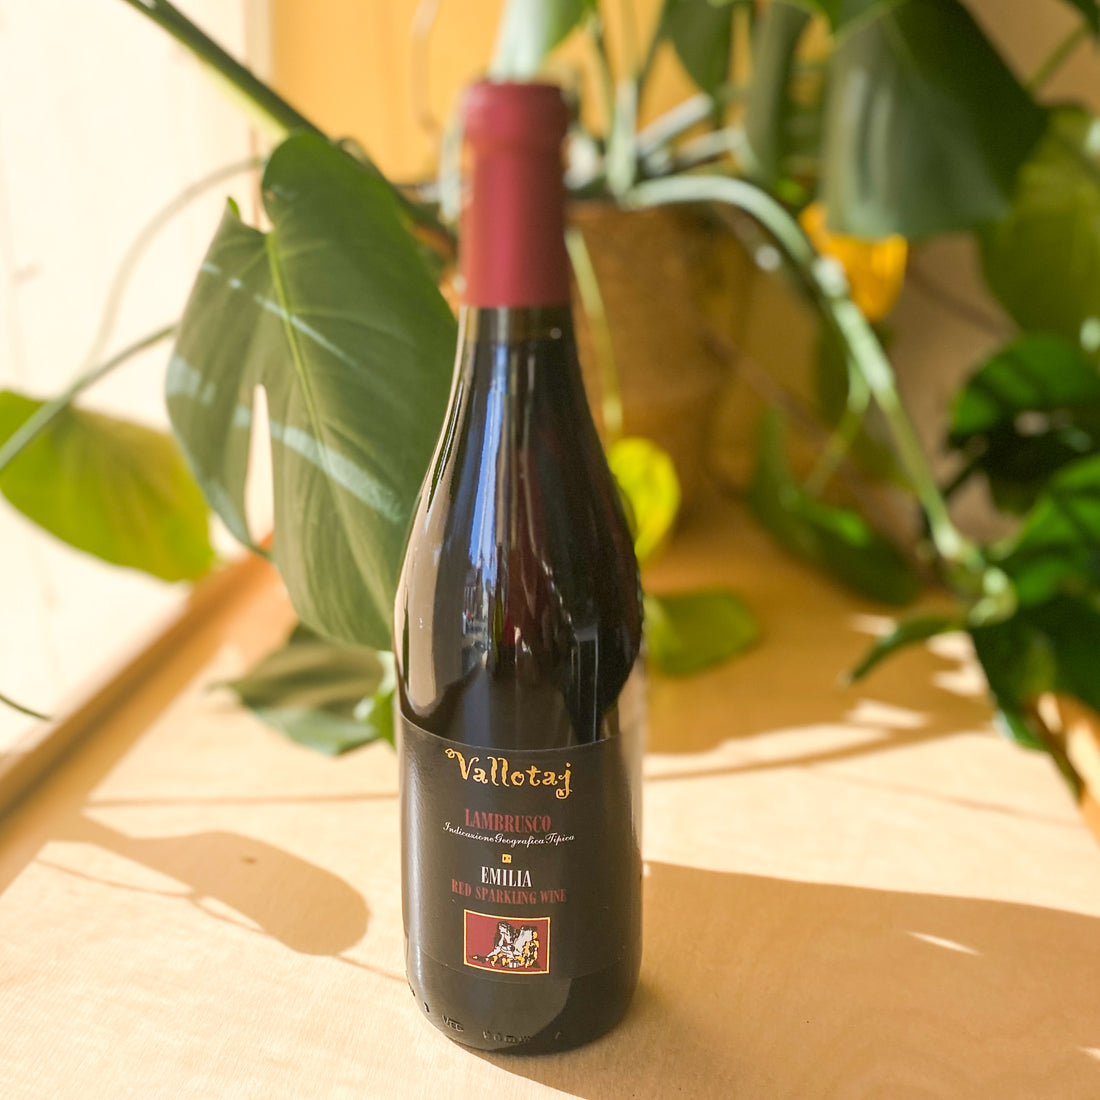 A bottle of Vallotaj Lambrusco sparkling red wine.